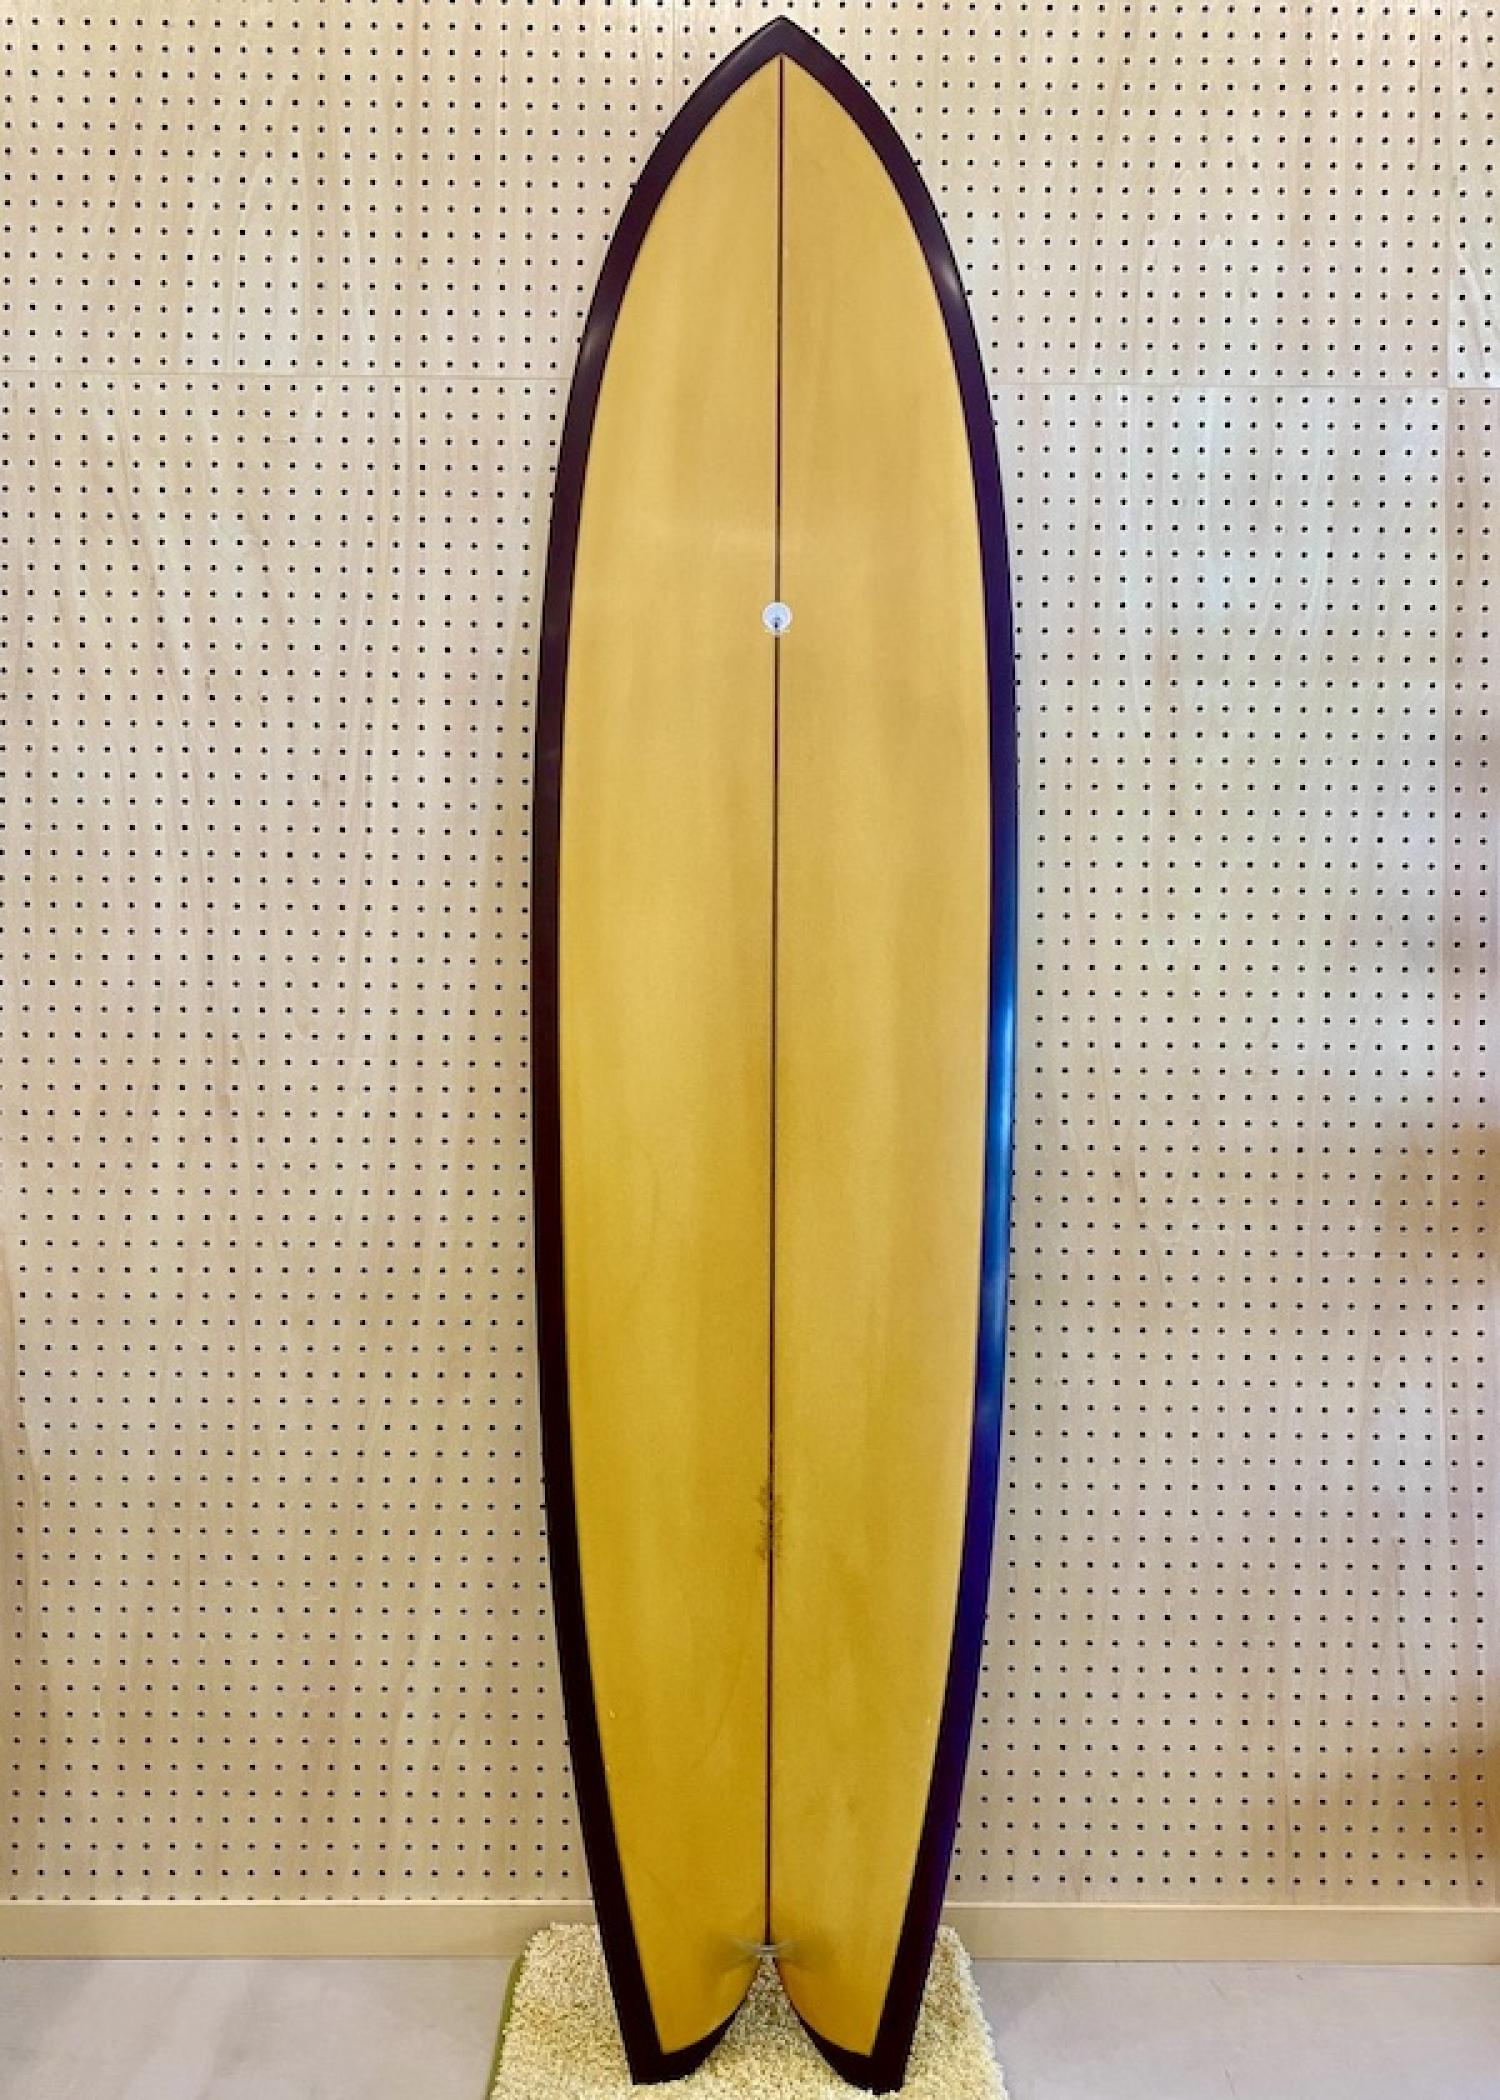 DRIFTER 7.4 Michael Miller Surfboards